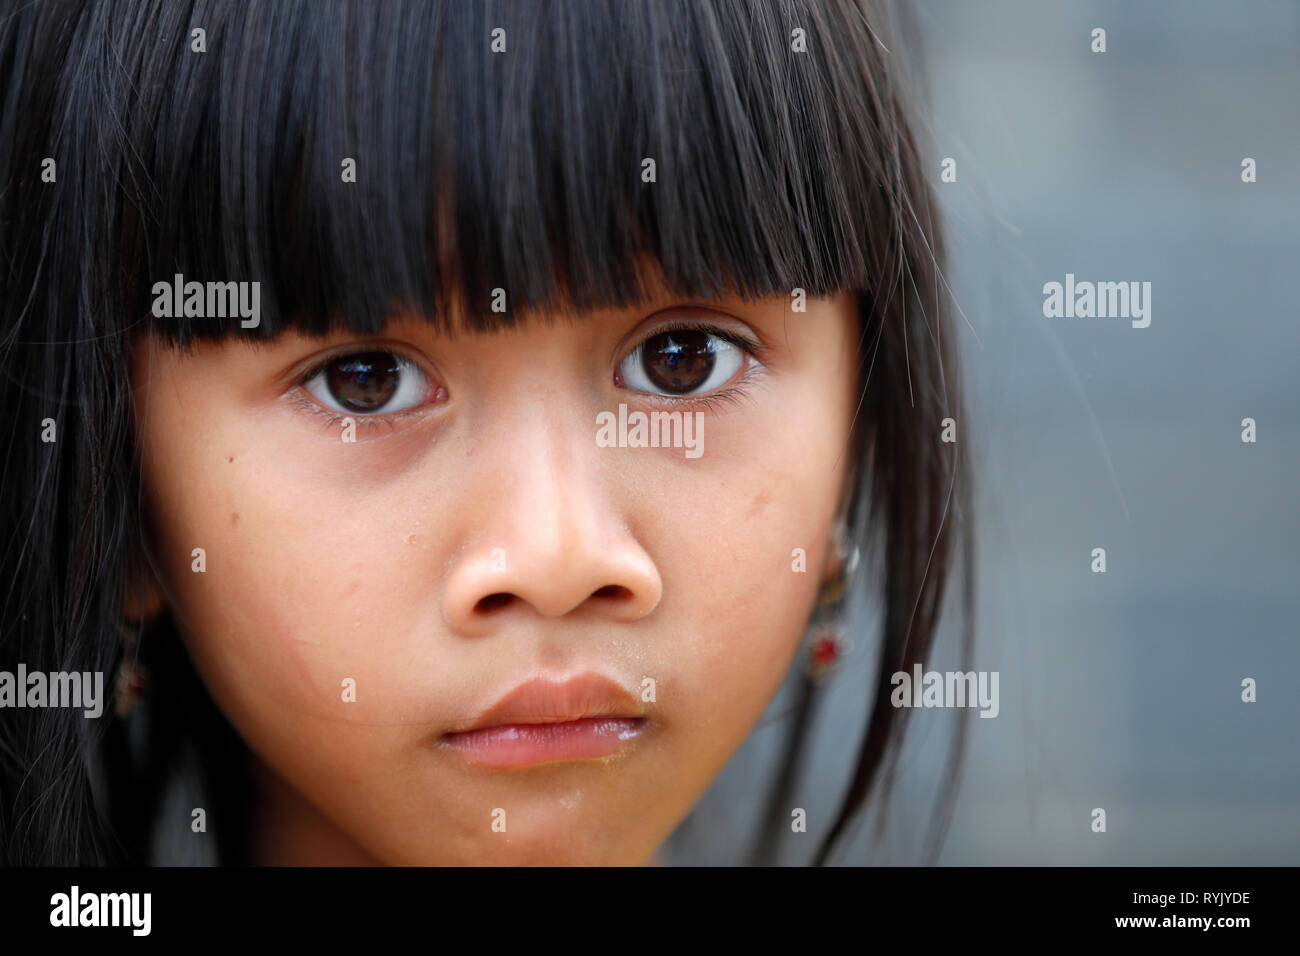 Ethnische Minderheit Kind. Junges Mädchen. Dalat. Vietnam. Stockfoto